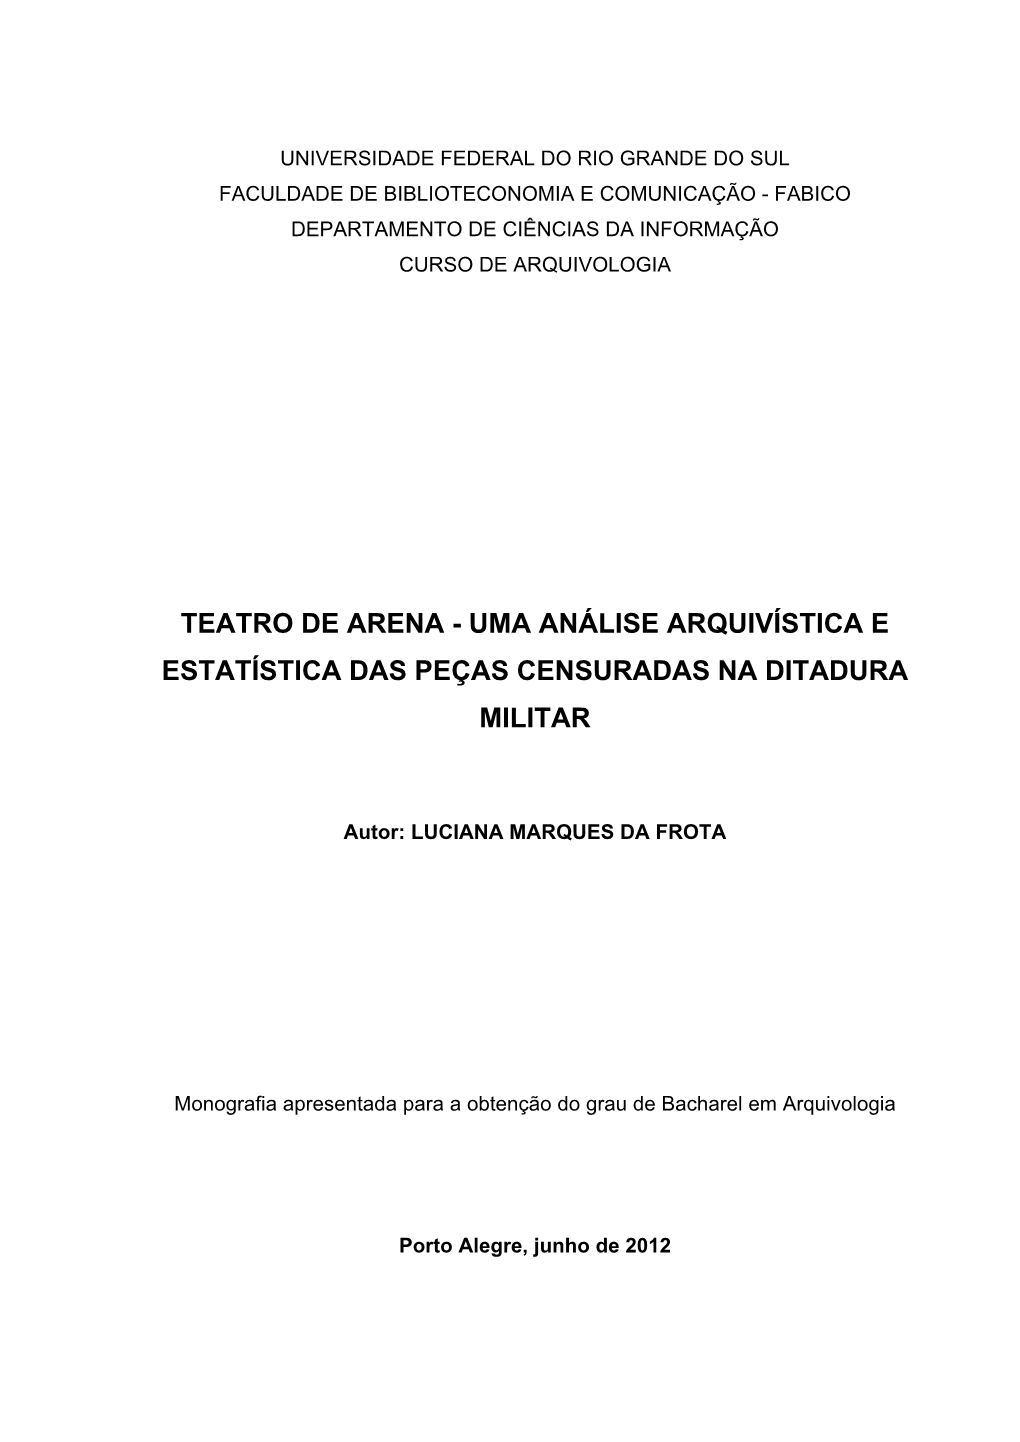 Teatro De Arena - Uma Análise Arquivística E Estatística Das Peças Censuradas Na Ditadura Militar